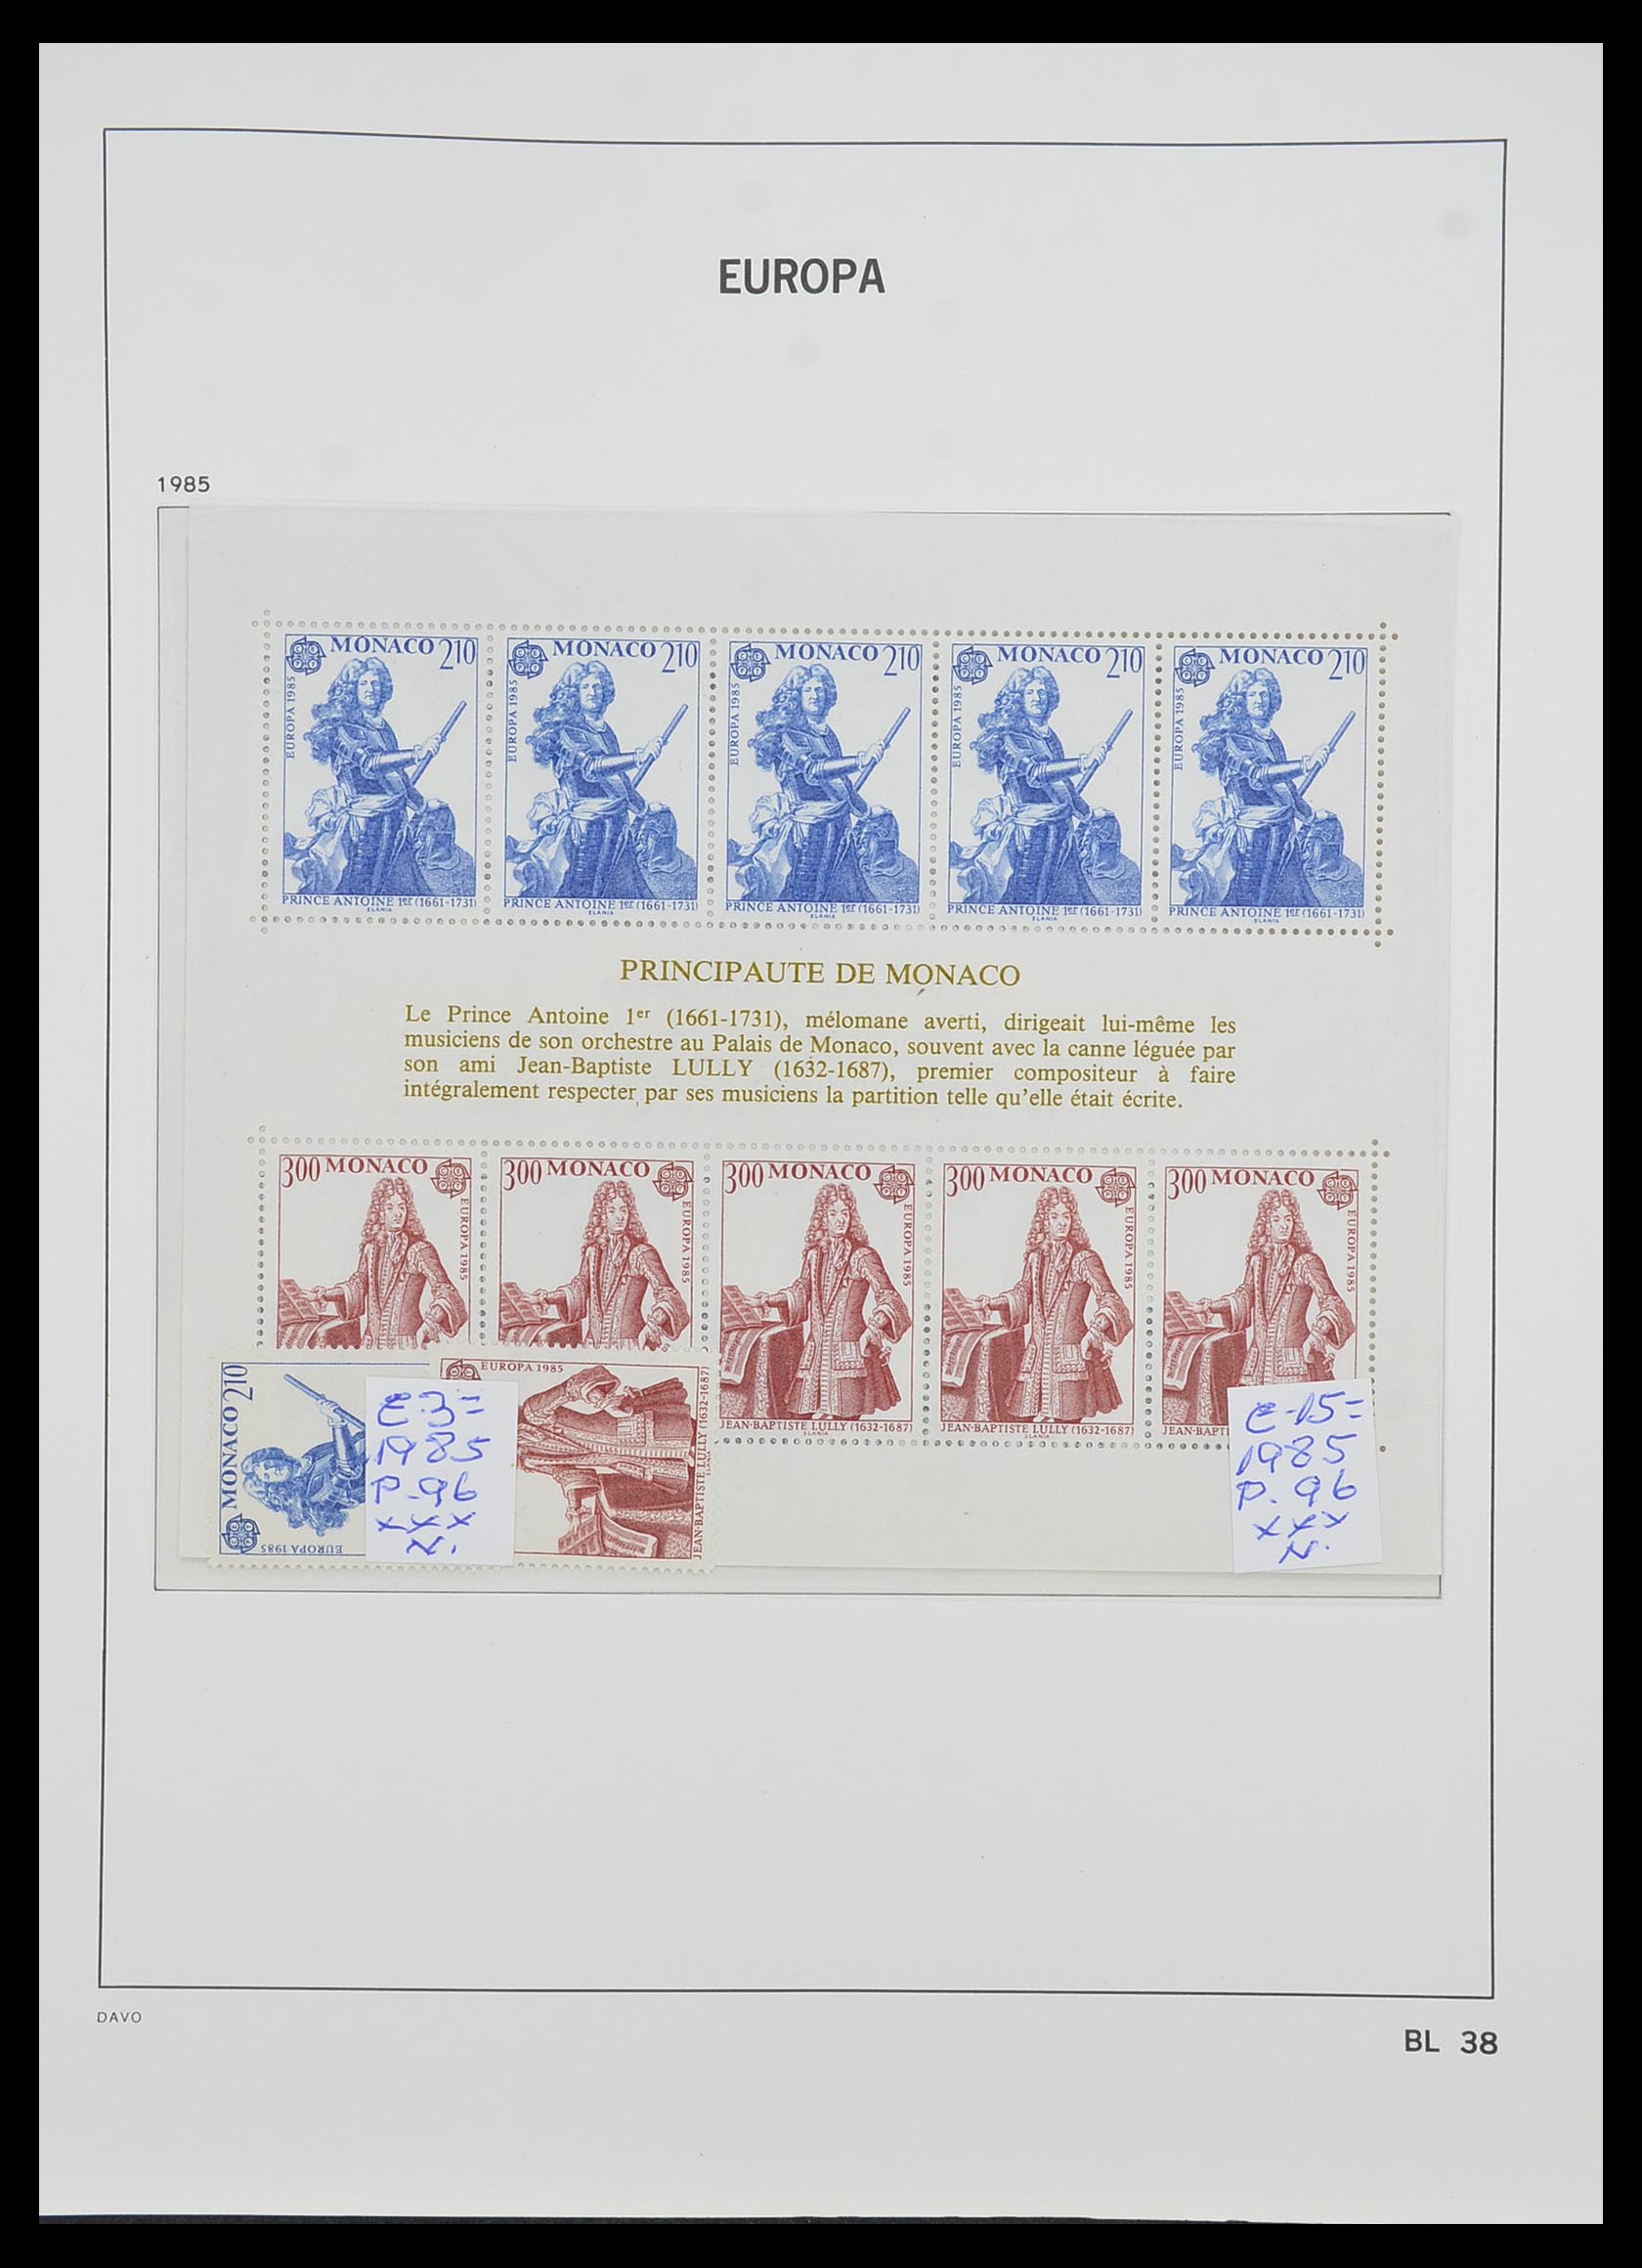 33985 038 - Stamp collection 33985 Europa CEPT souvenir sheets 1974-2014.